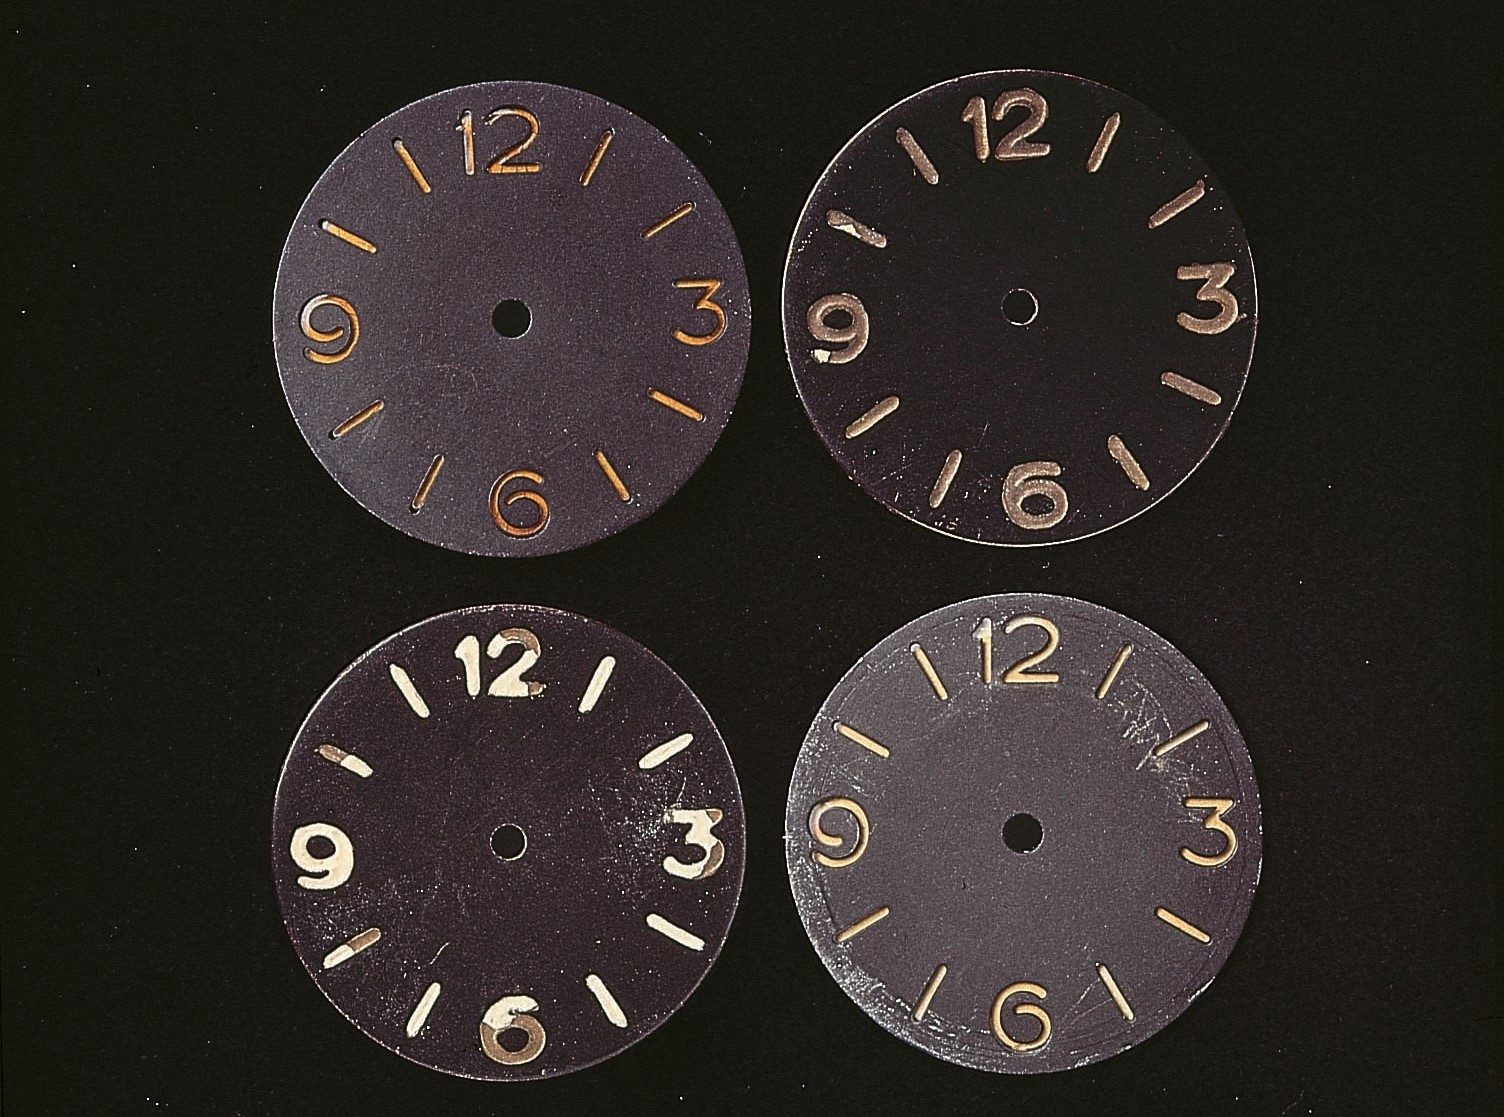 初版模型產於 1936 年的 Radiomir 系列，沛納海為了滿足義大利皇家海軍作戰需求，多次調整它的設計細節：例如可以增強鐳塗層夜光效果的三明治面盤、將線性錶耳調整為一體成形錶耳、方便判讀時間的四方位醒目阿拉伯數字與時標，整體而言 Radiomir 就是為了戰鬥而生的極限腕錶。